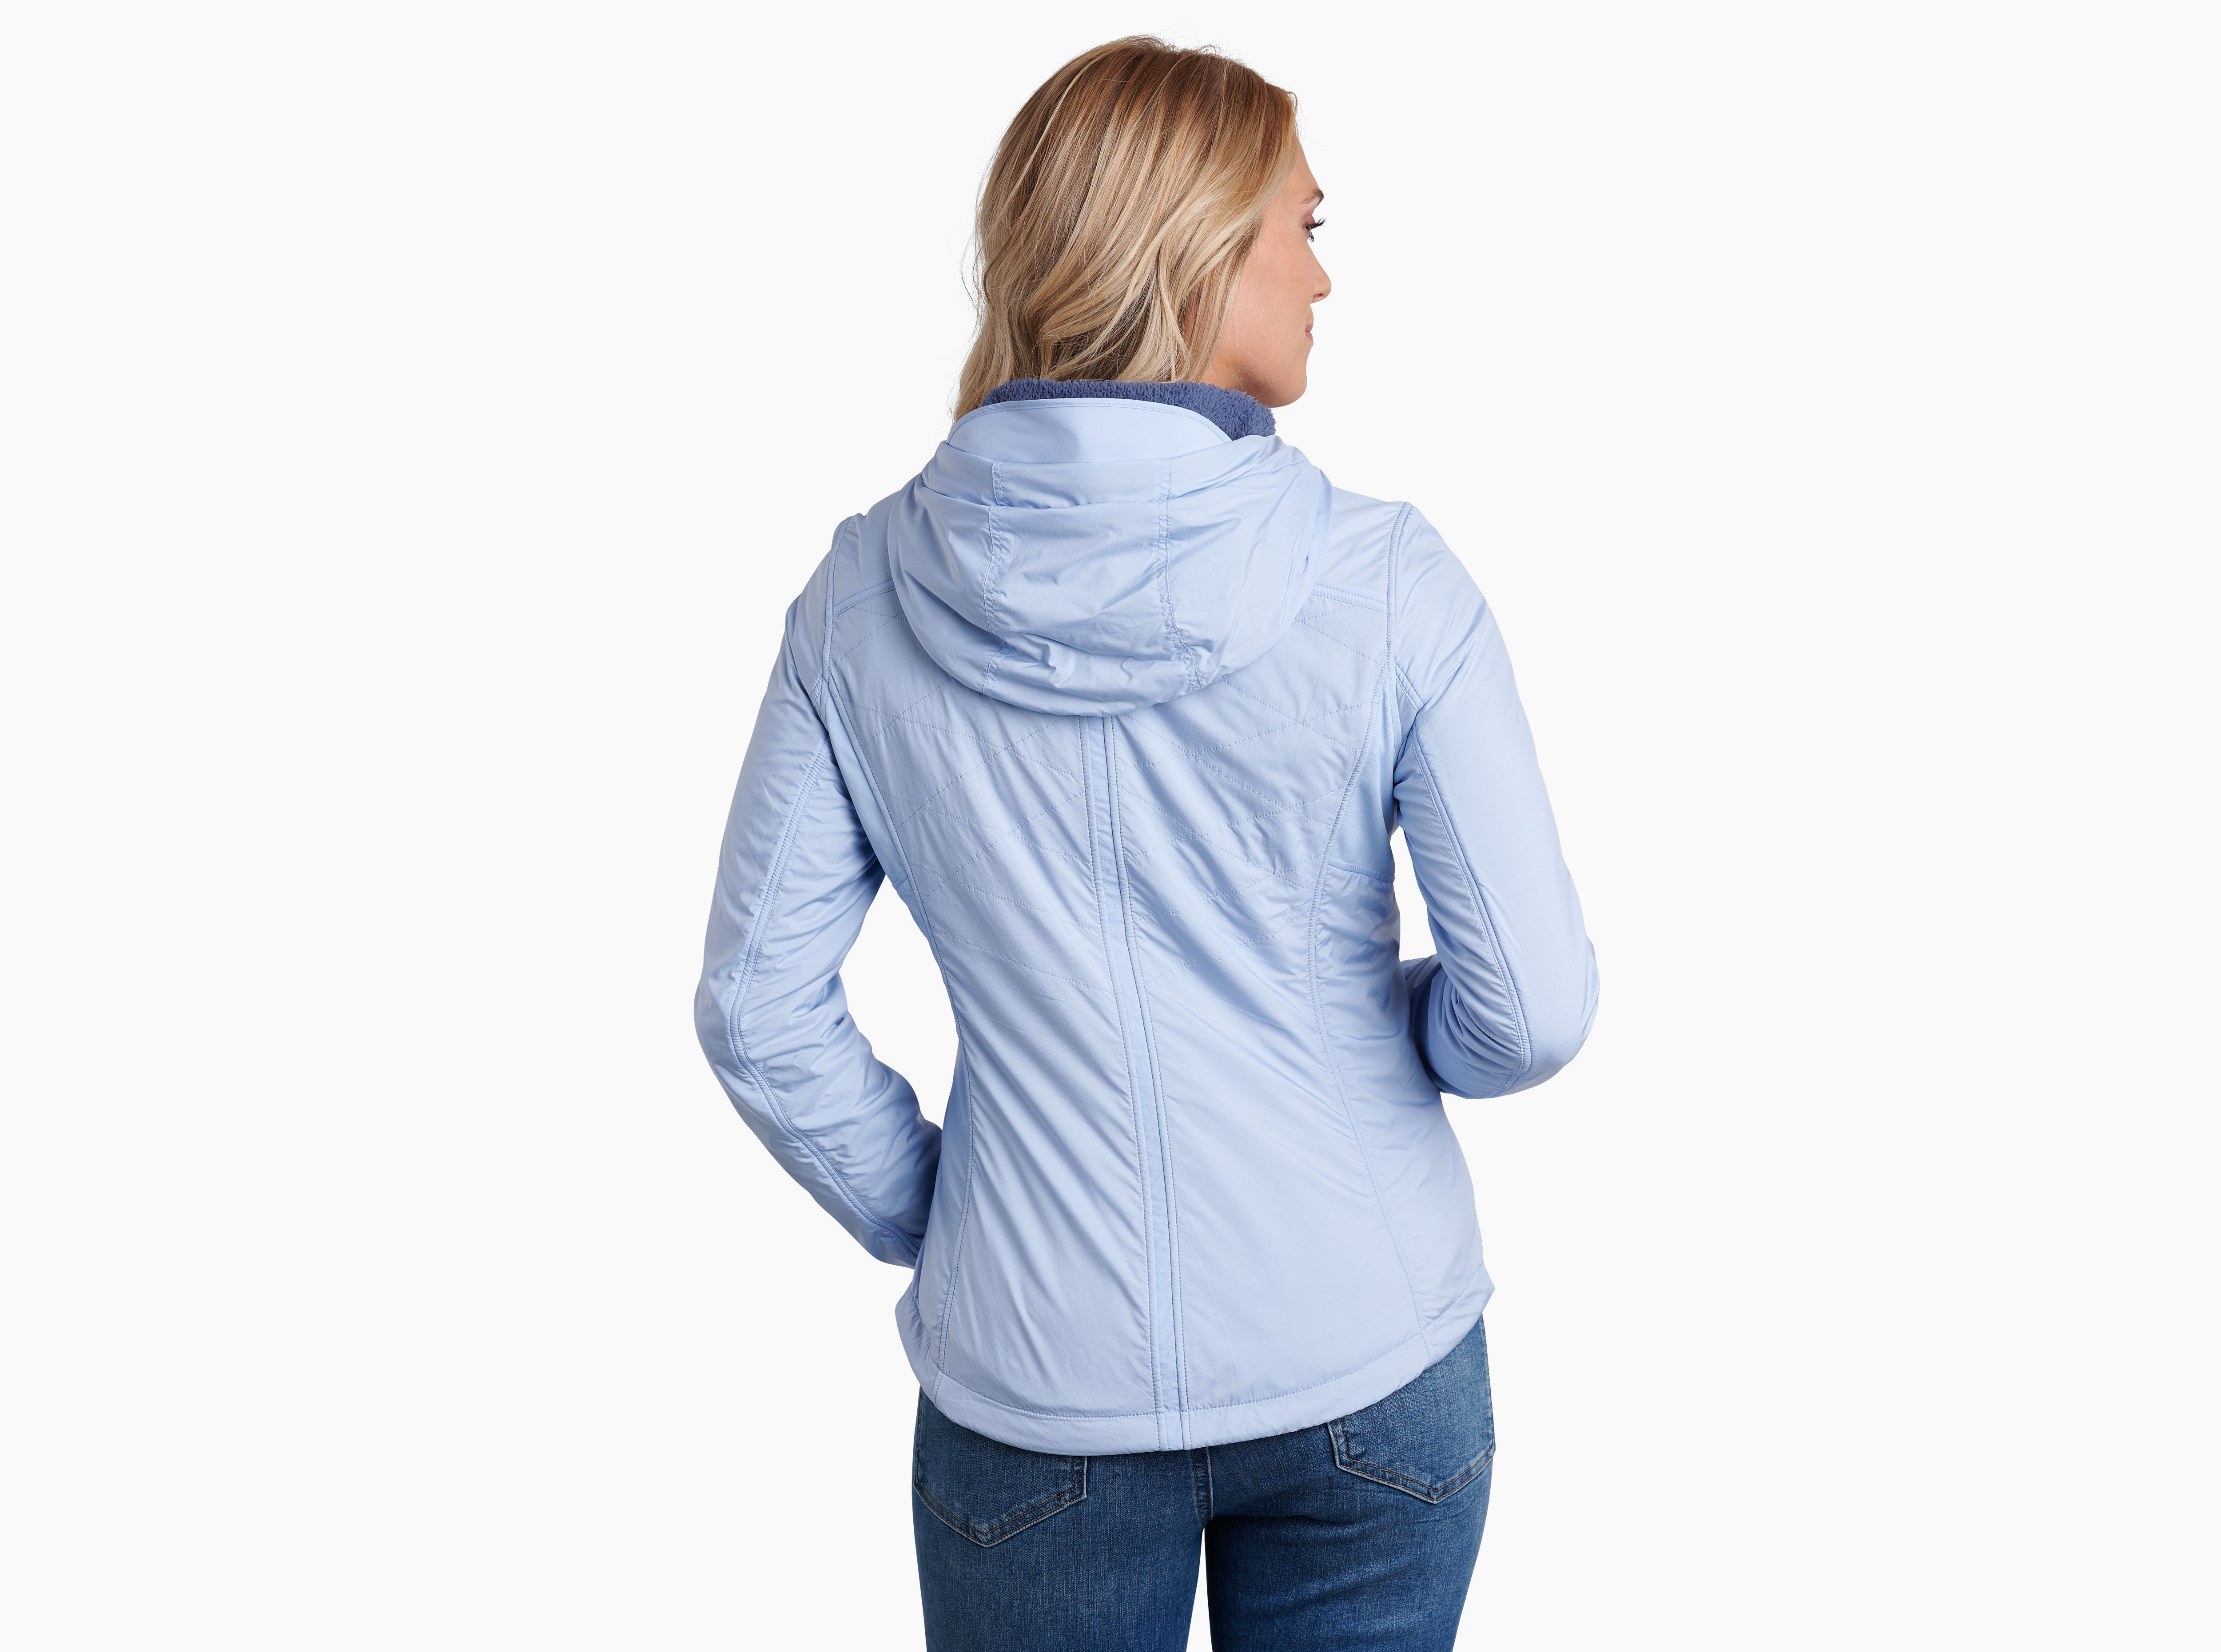 The One™ Hoody in Women's Jackets